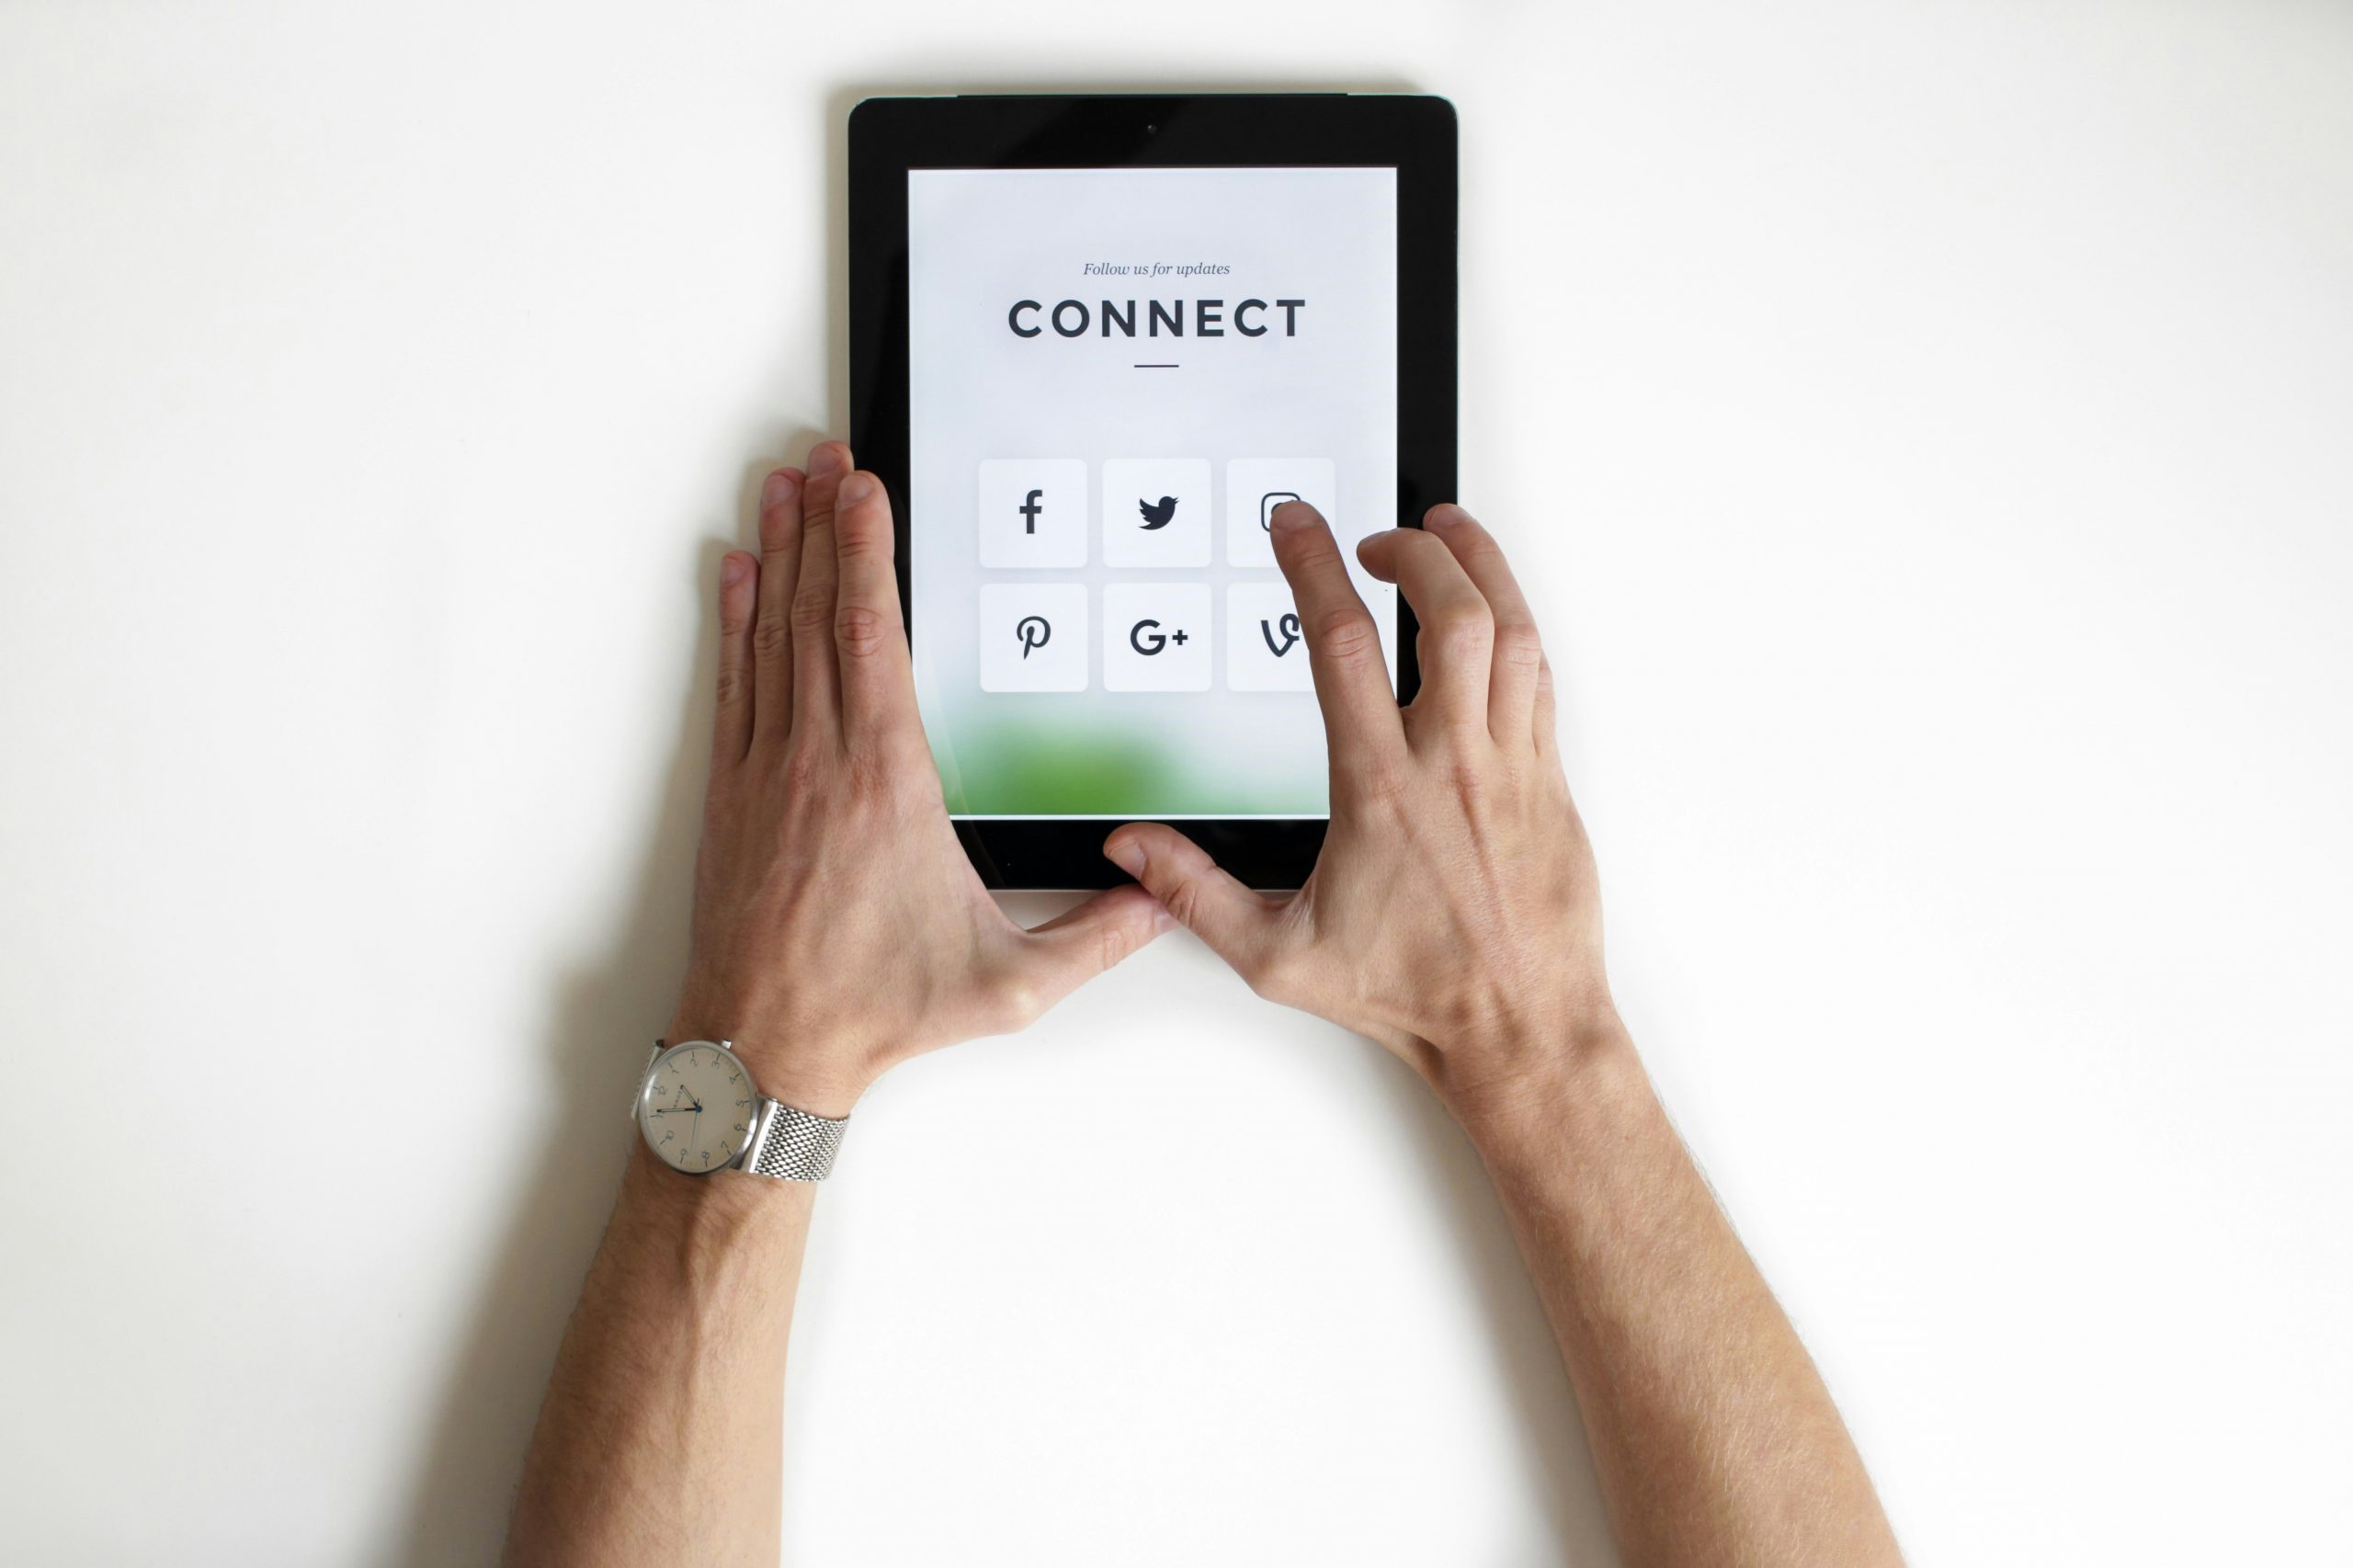 En surfplatta som visar texten "Connect" och sociala medier ikoner